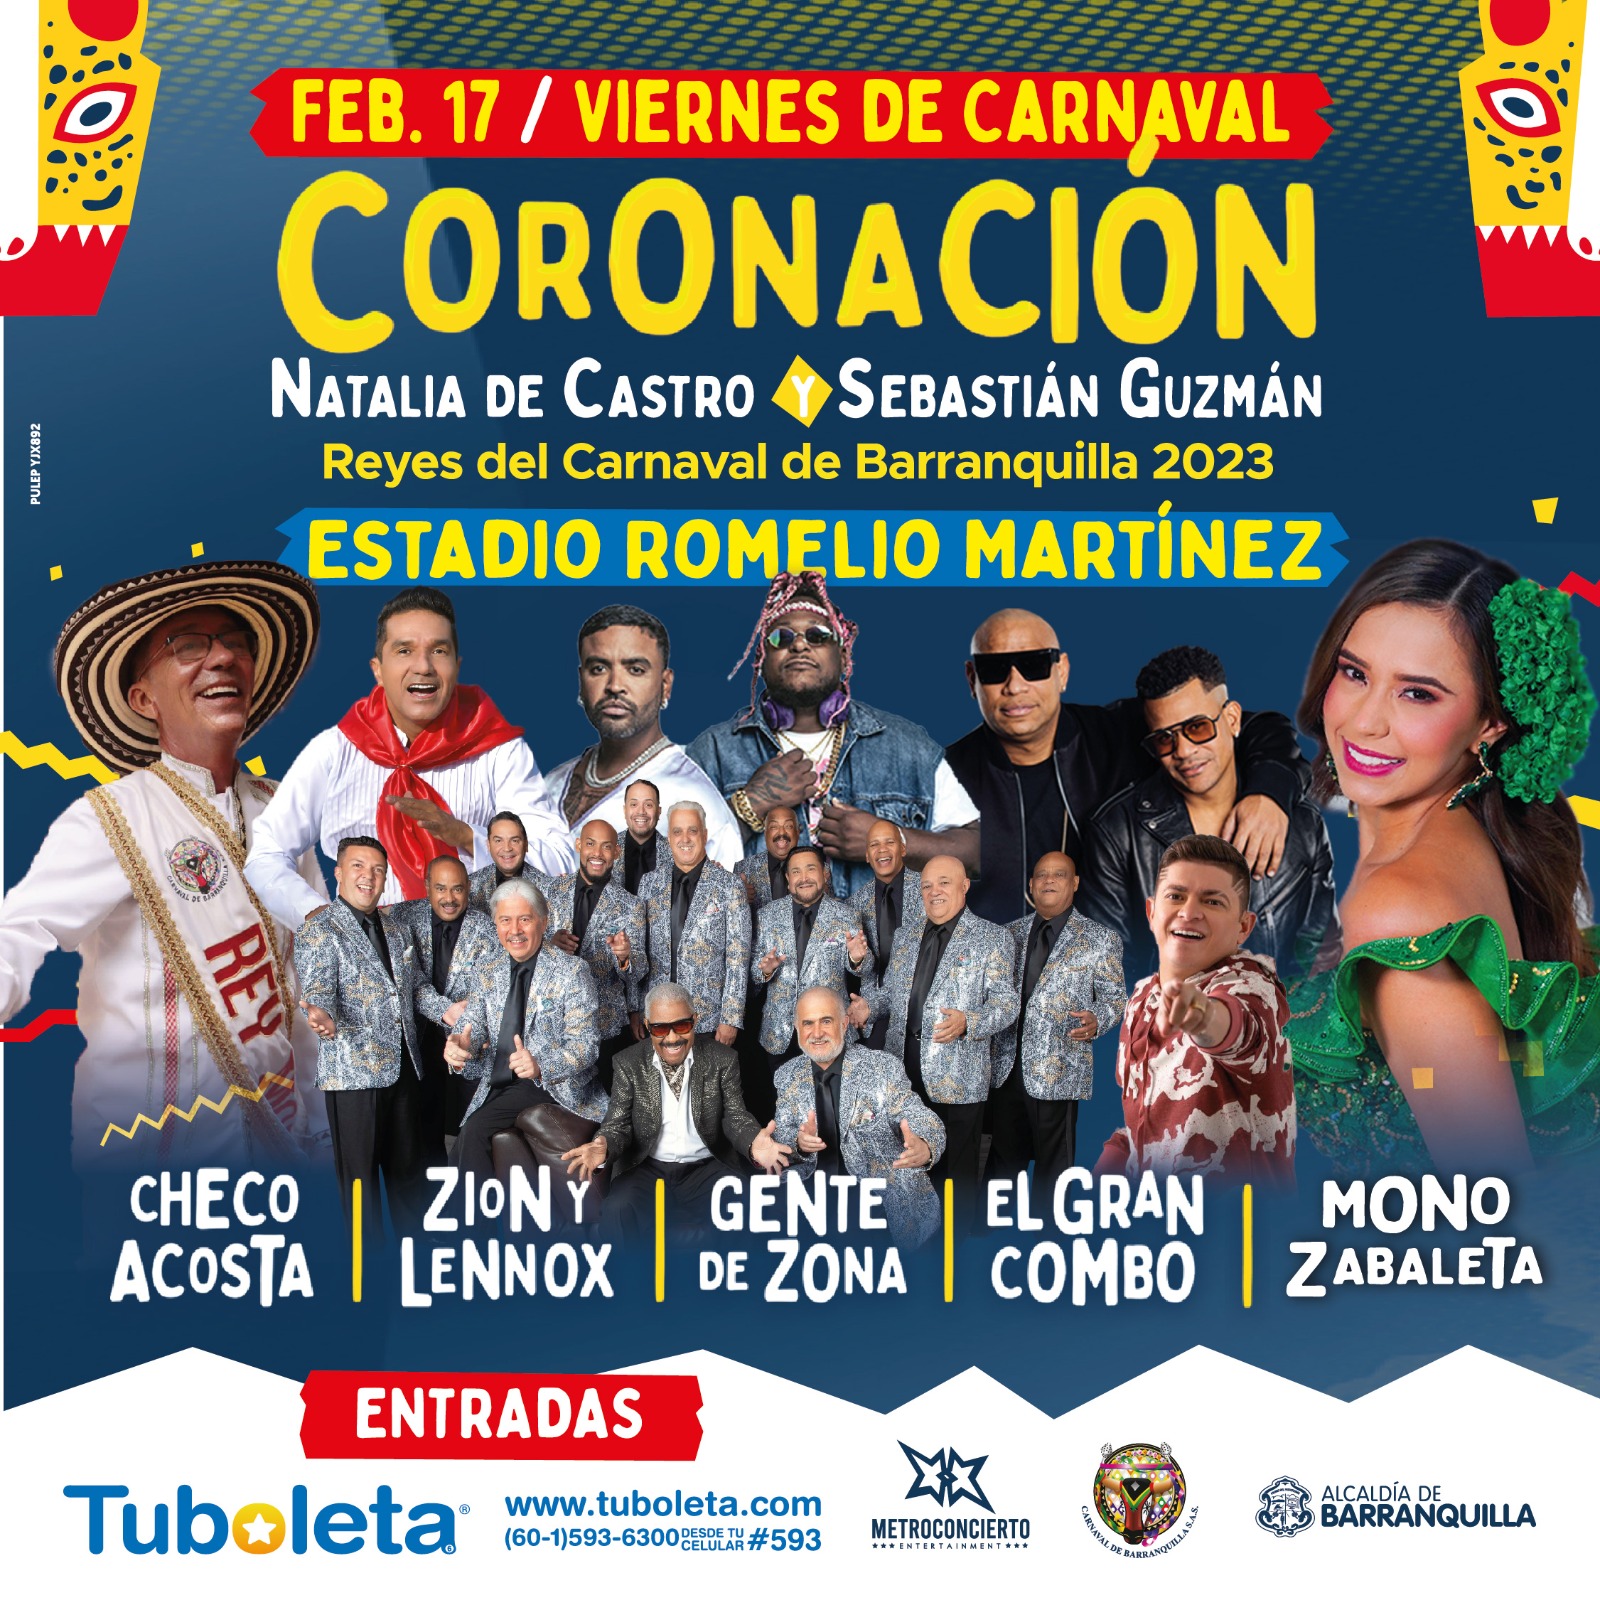 Imagen de los artistas para el concierto de Coronación del Carnaval 2023.